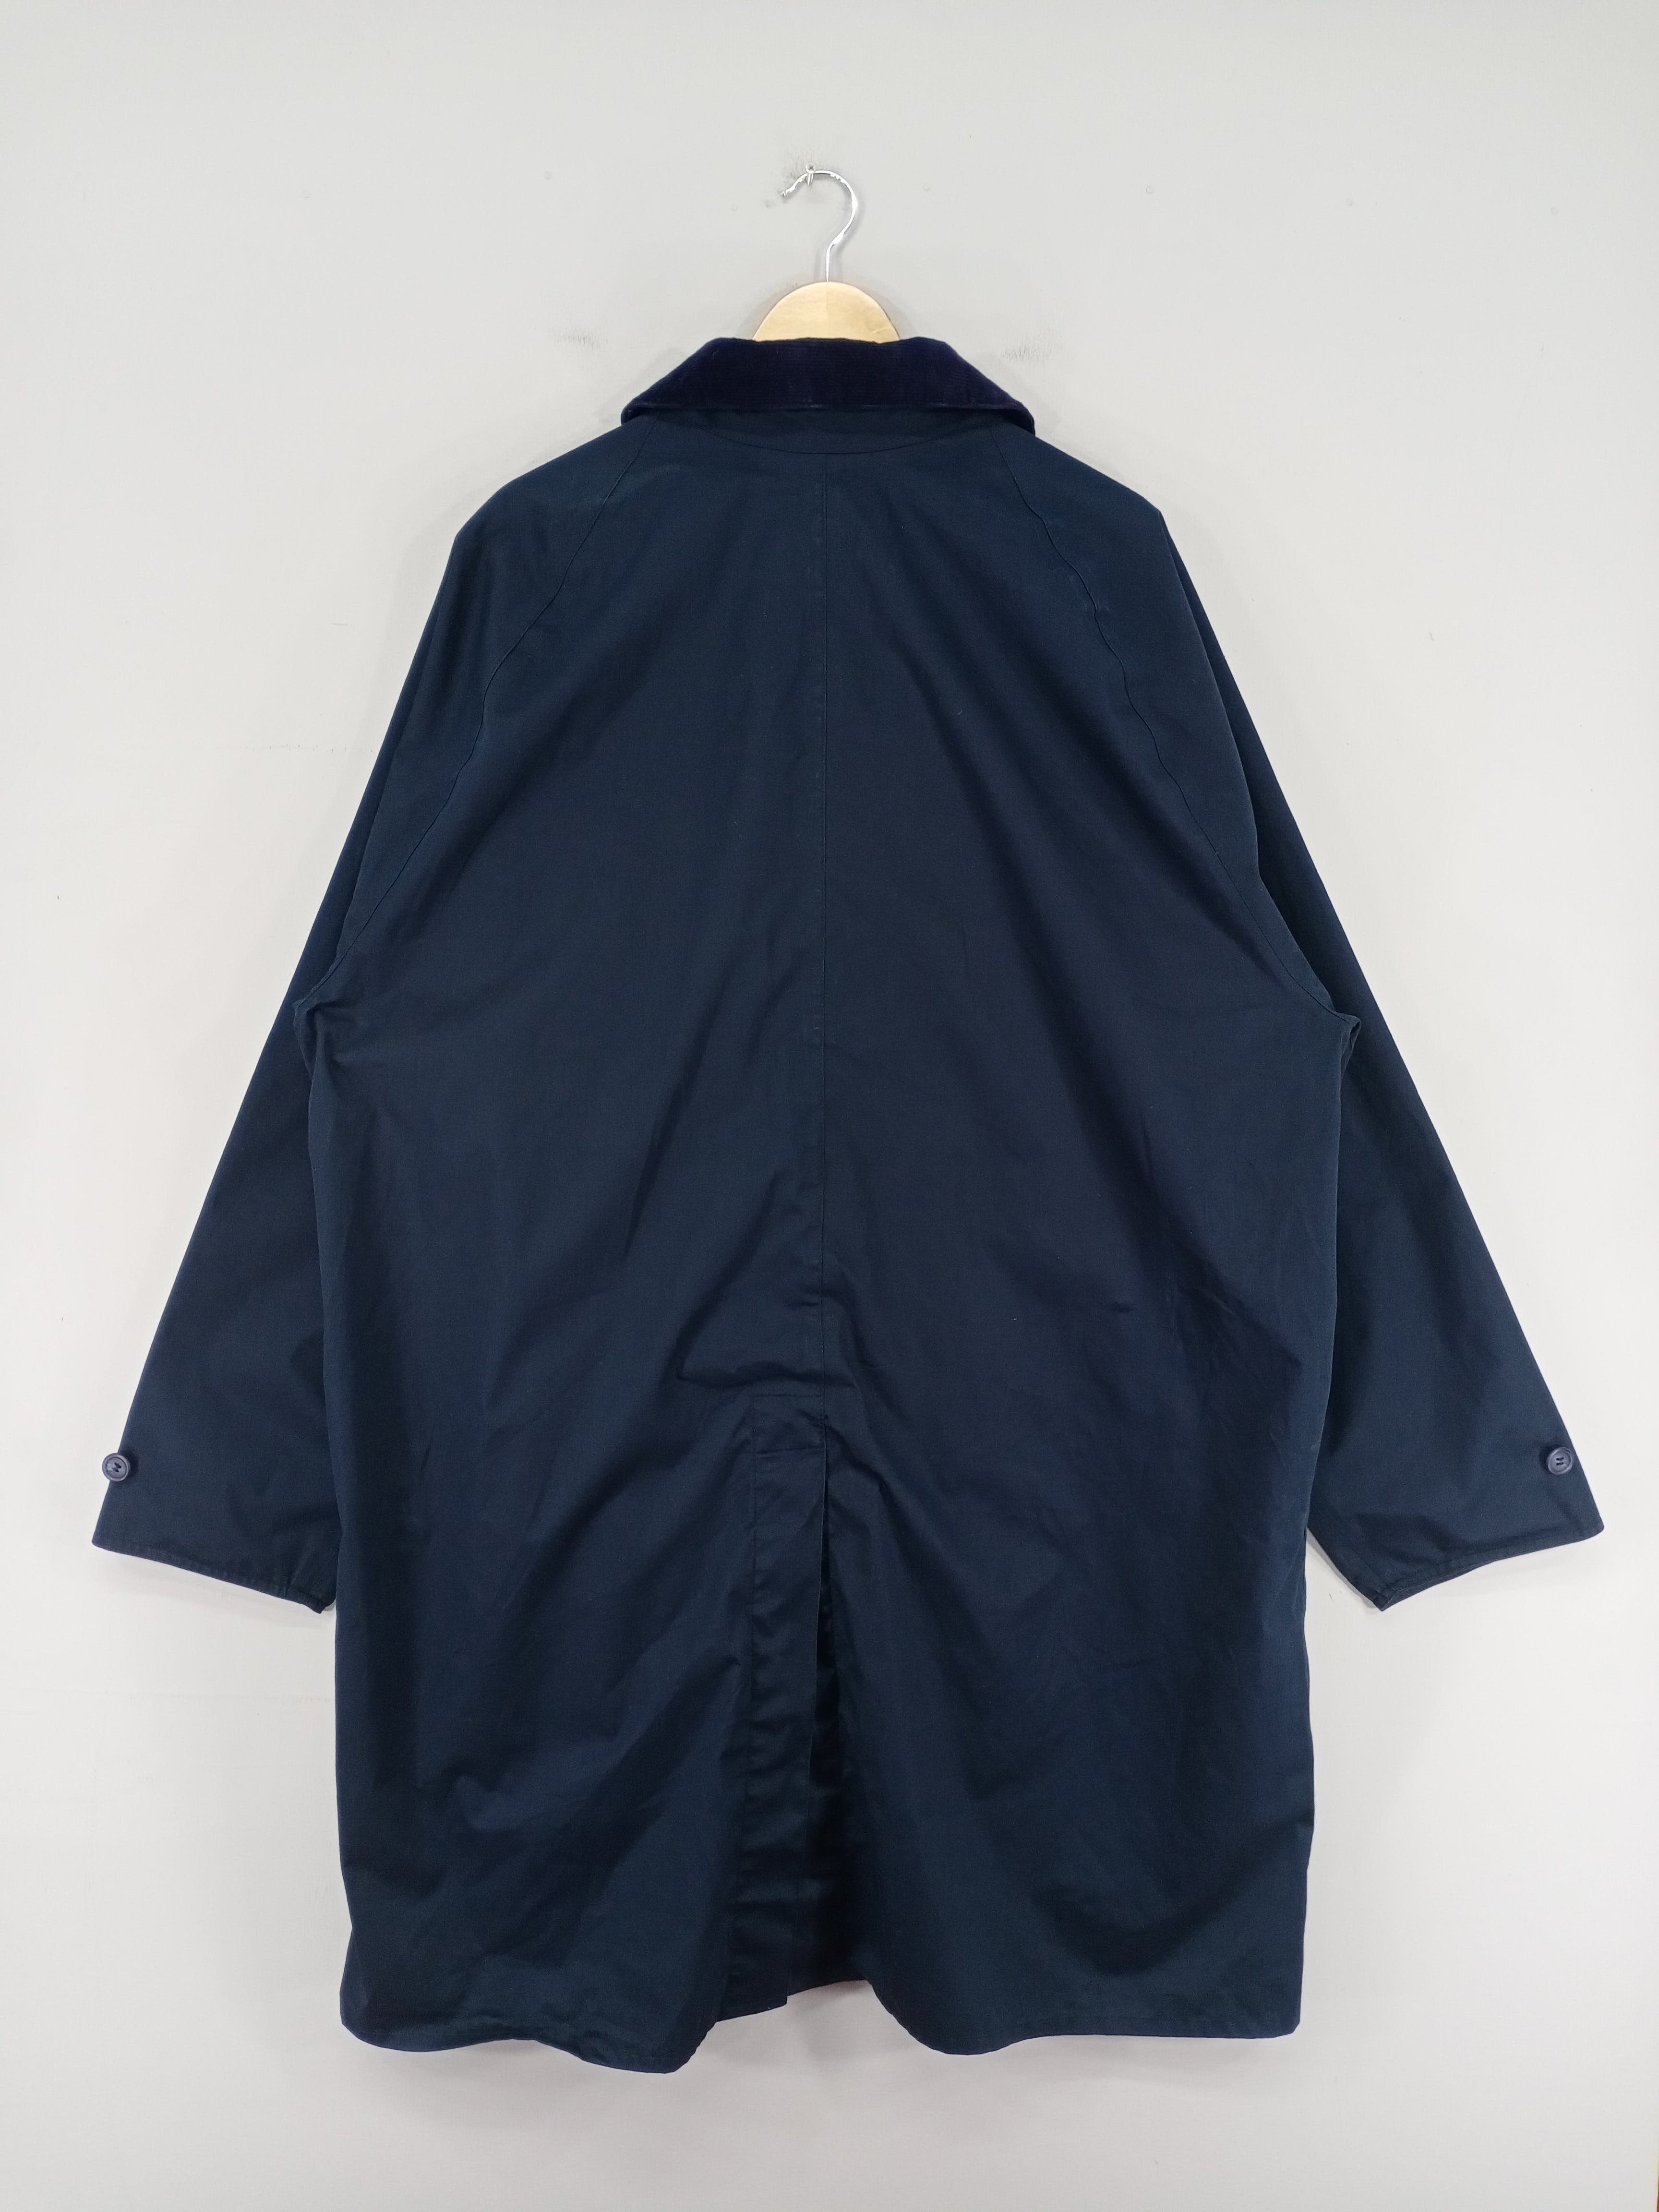 💥RARE💥Vintage Barbour Lightweight 3/4 Coat Jacket - 12